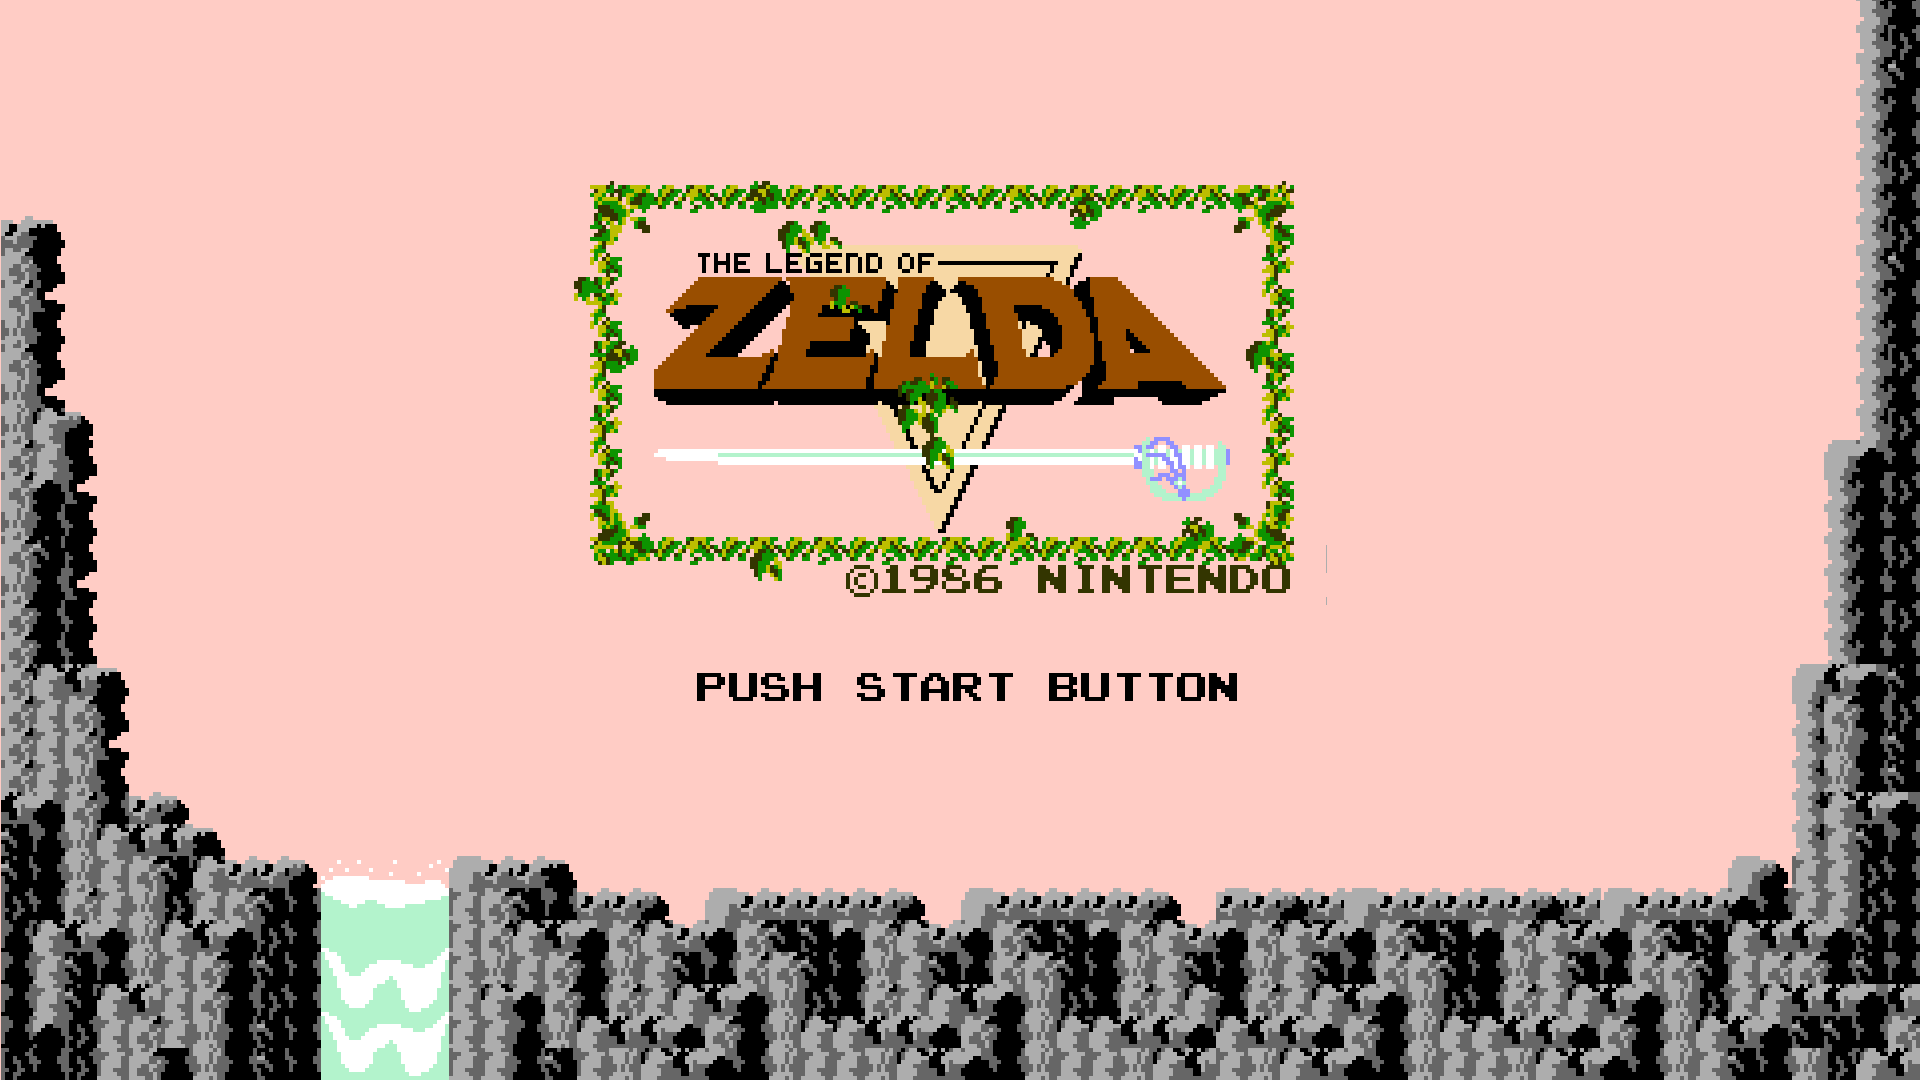 The Legend Of Zelda HD Wallpaper 1920x1080